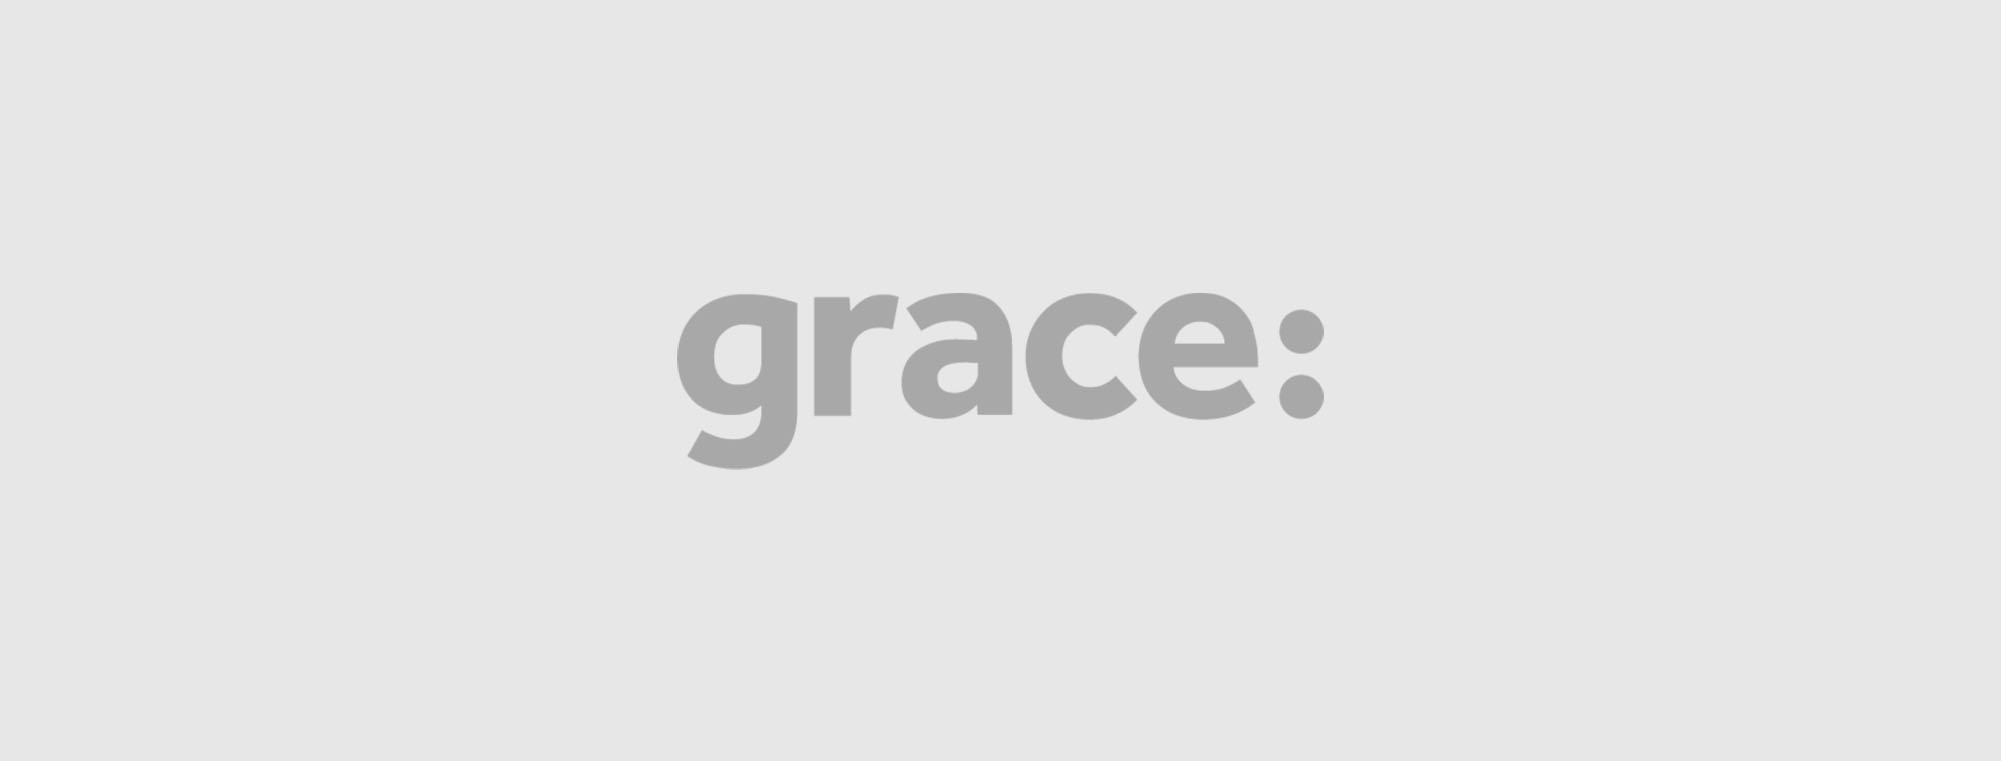 Grace Placeholder